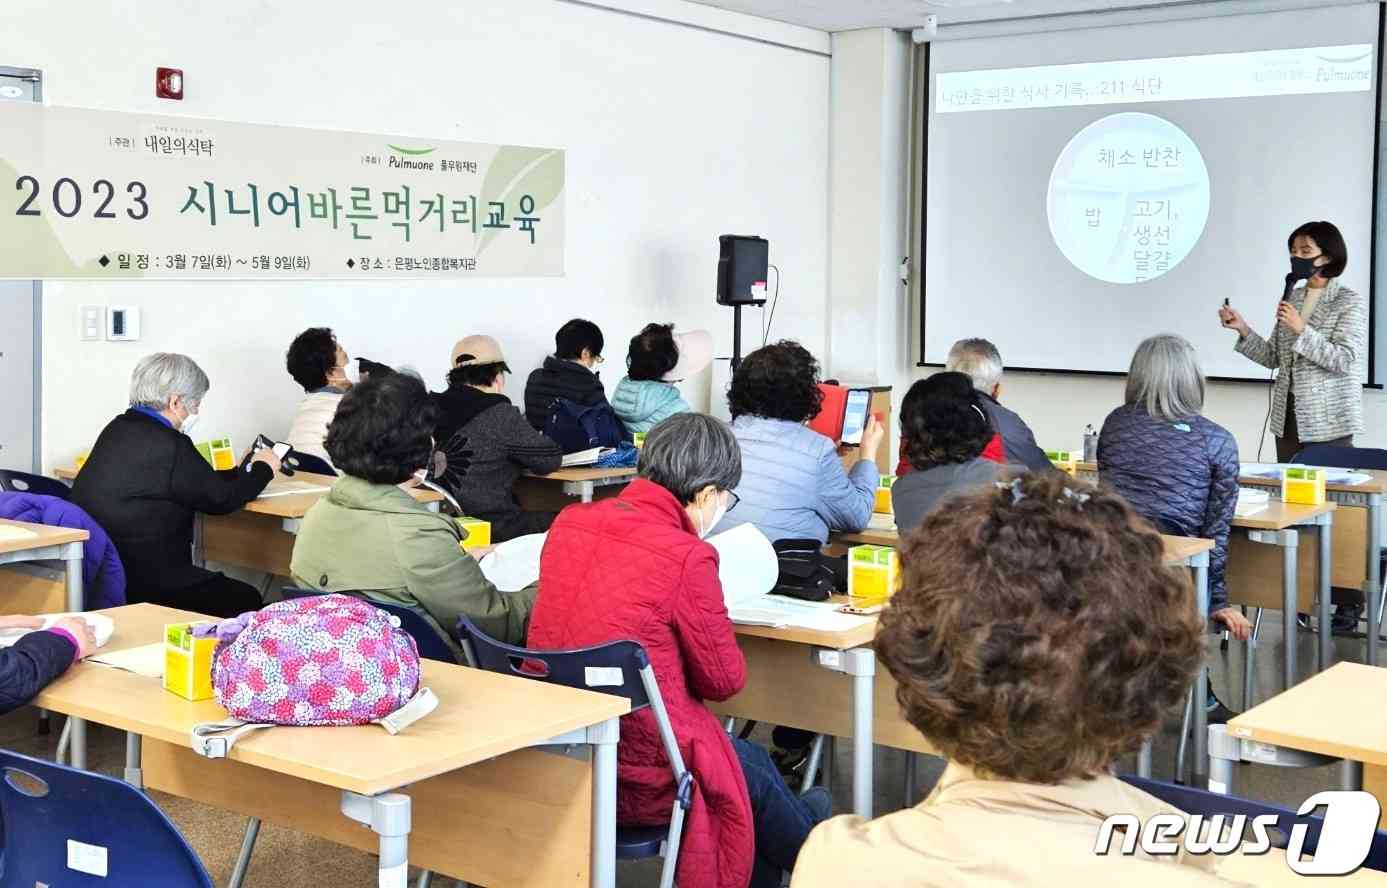 풀무원재단은 지난 3월 서울 은평노인종합복지관에서 '시니어 통합건강증진 프로젝트' 교육을 진행했다.(풀무원재단 제공)